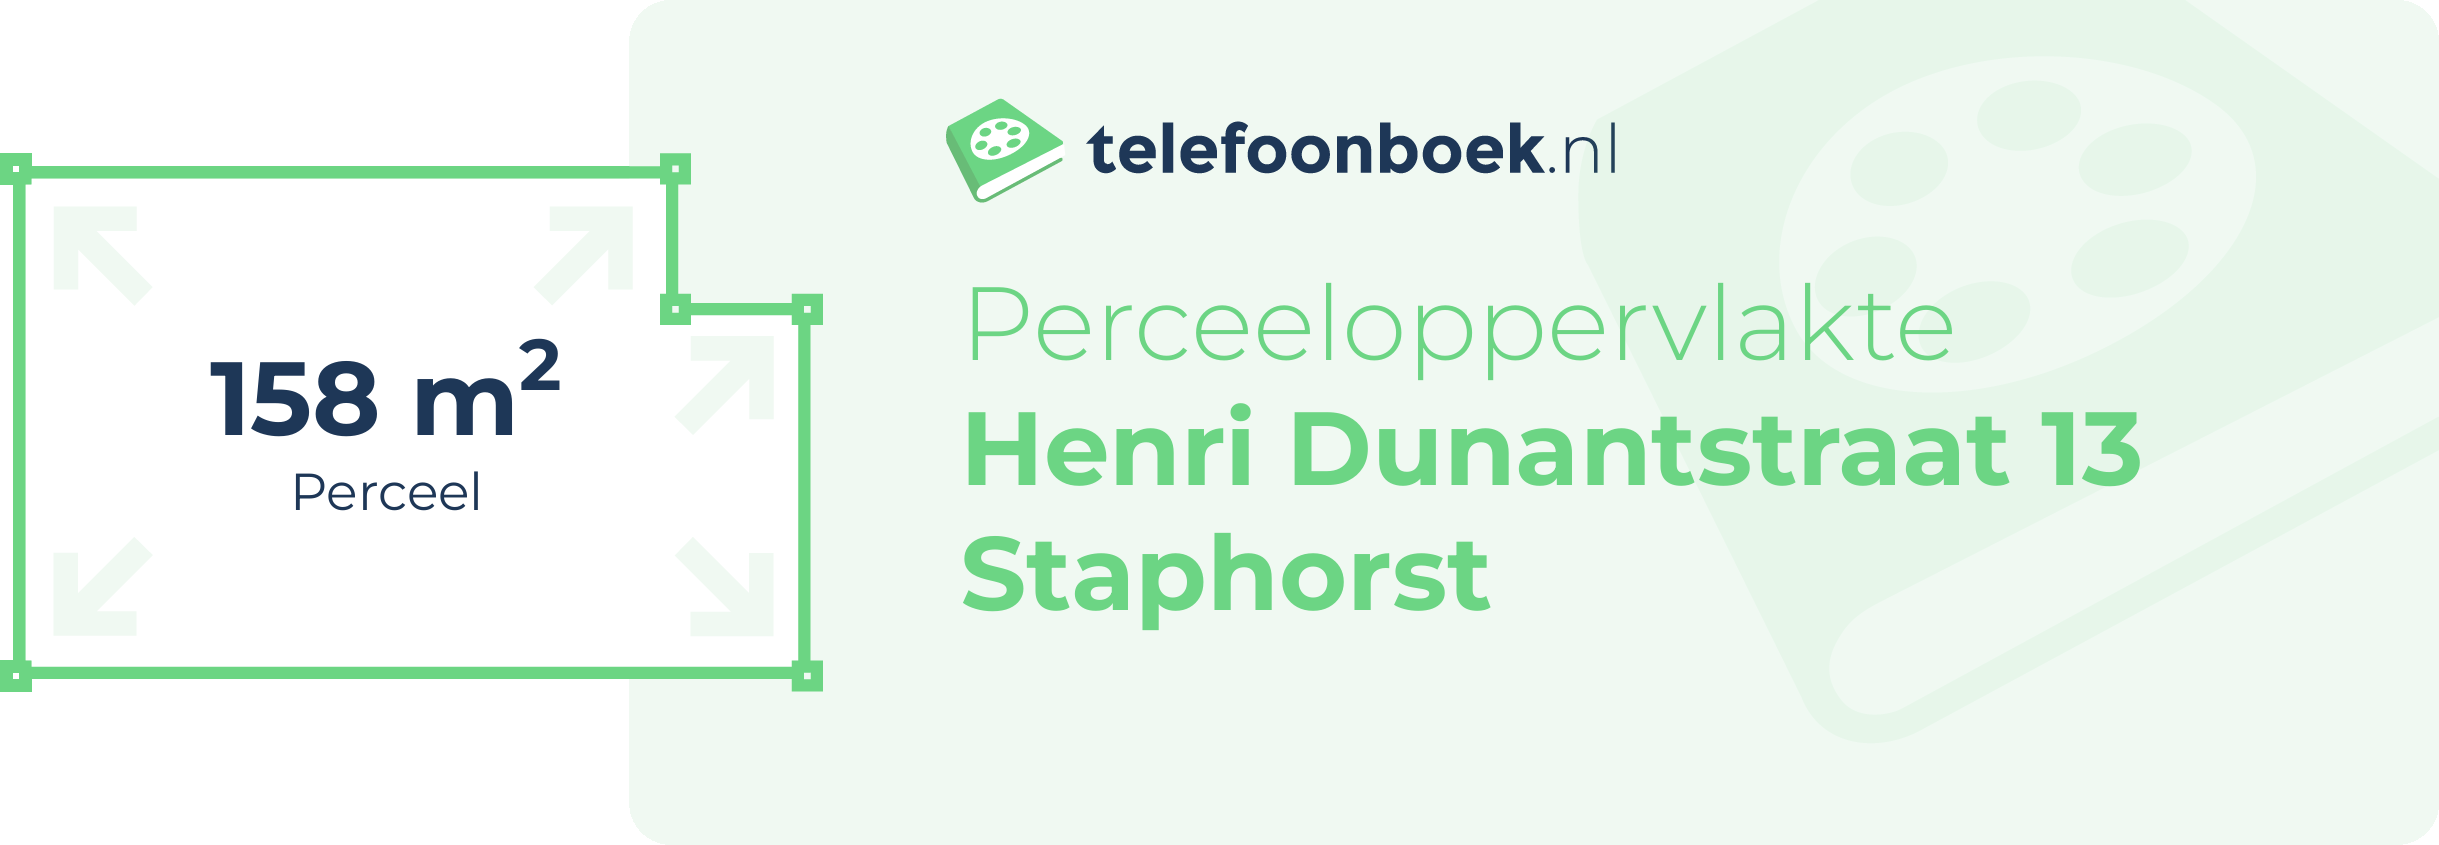 Perceeloppervlakte Henri Dunantstraat 13 Staphorst